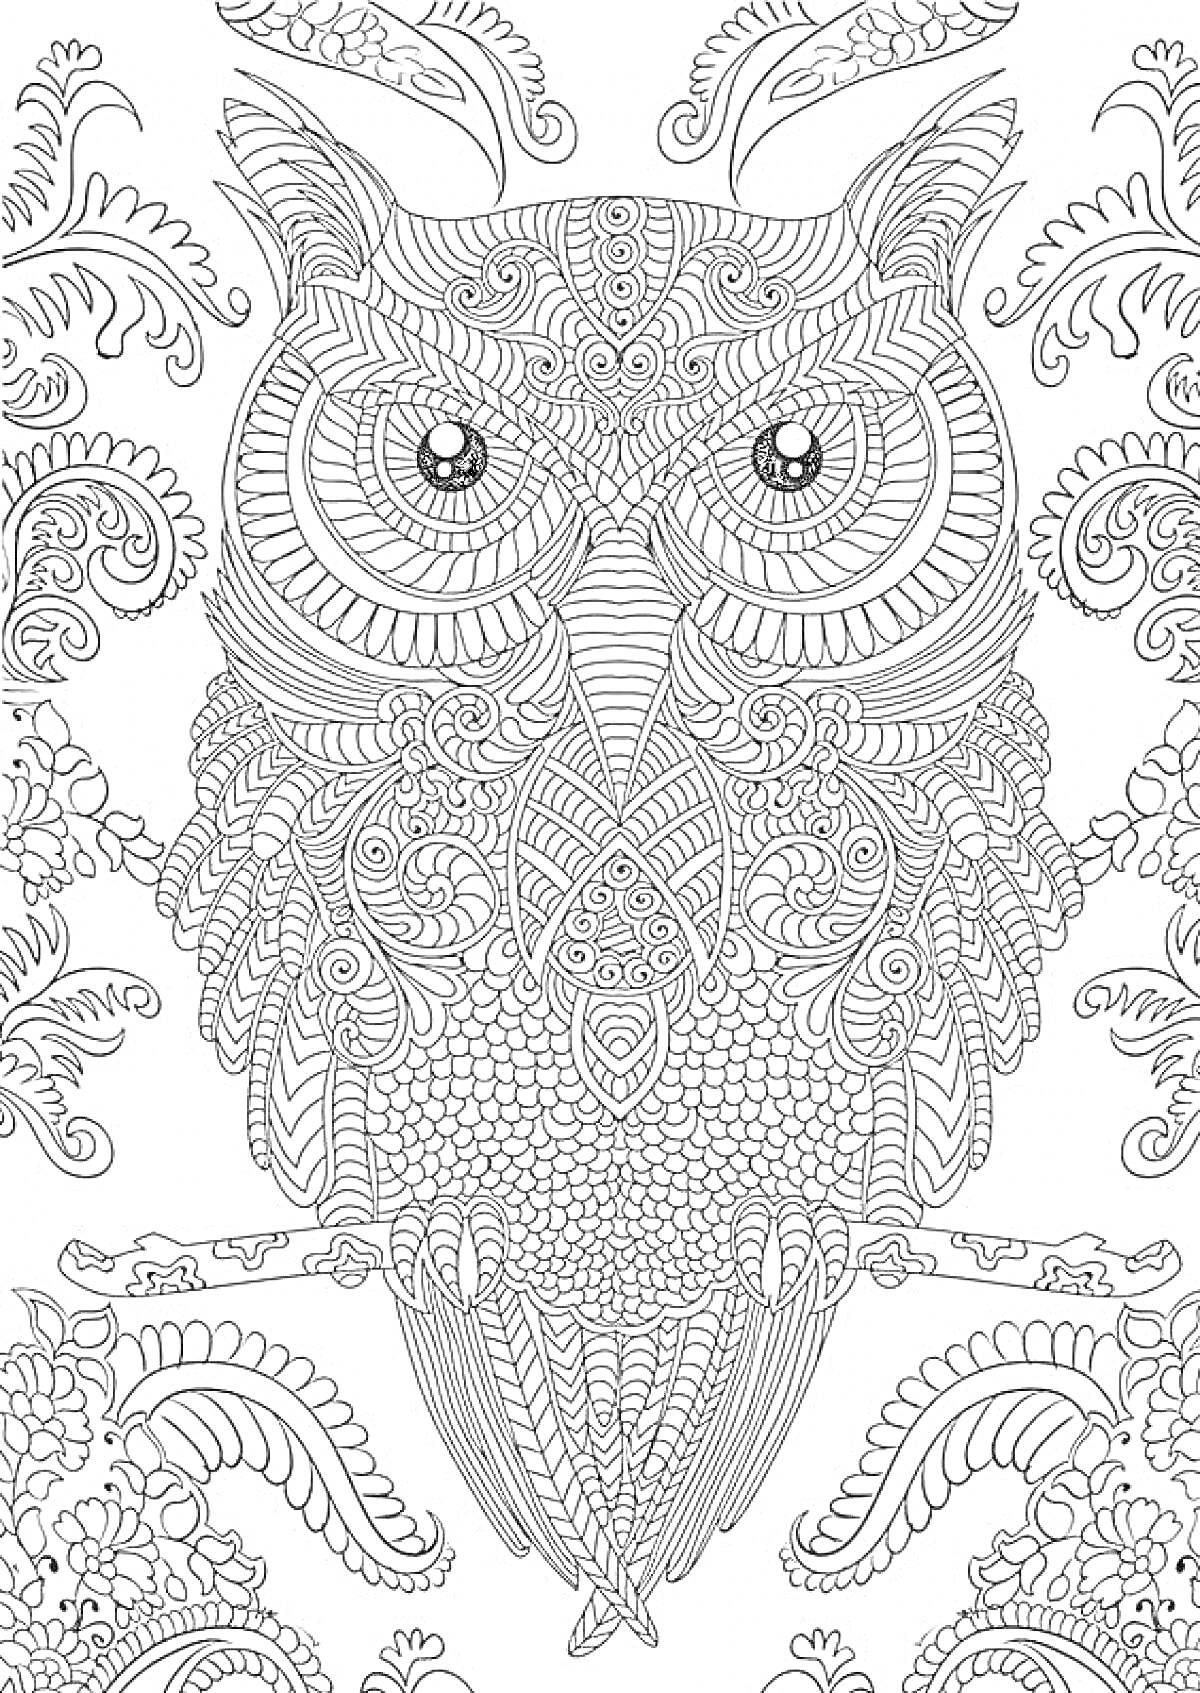 Раскраска Антистресс раскраска с филигранной совой, листьями и узорами.